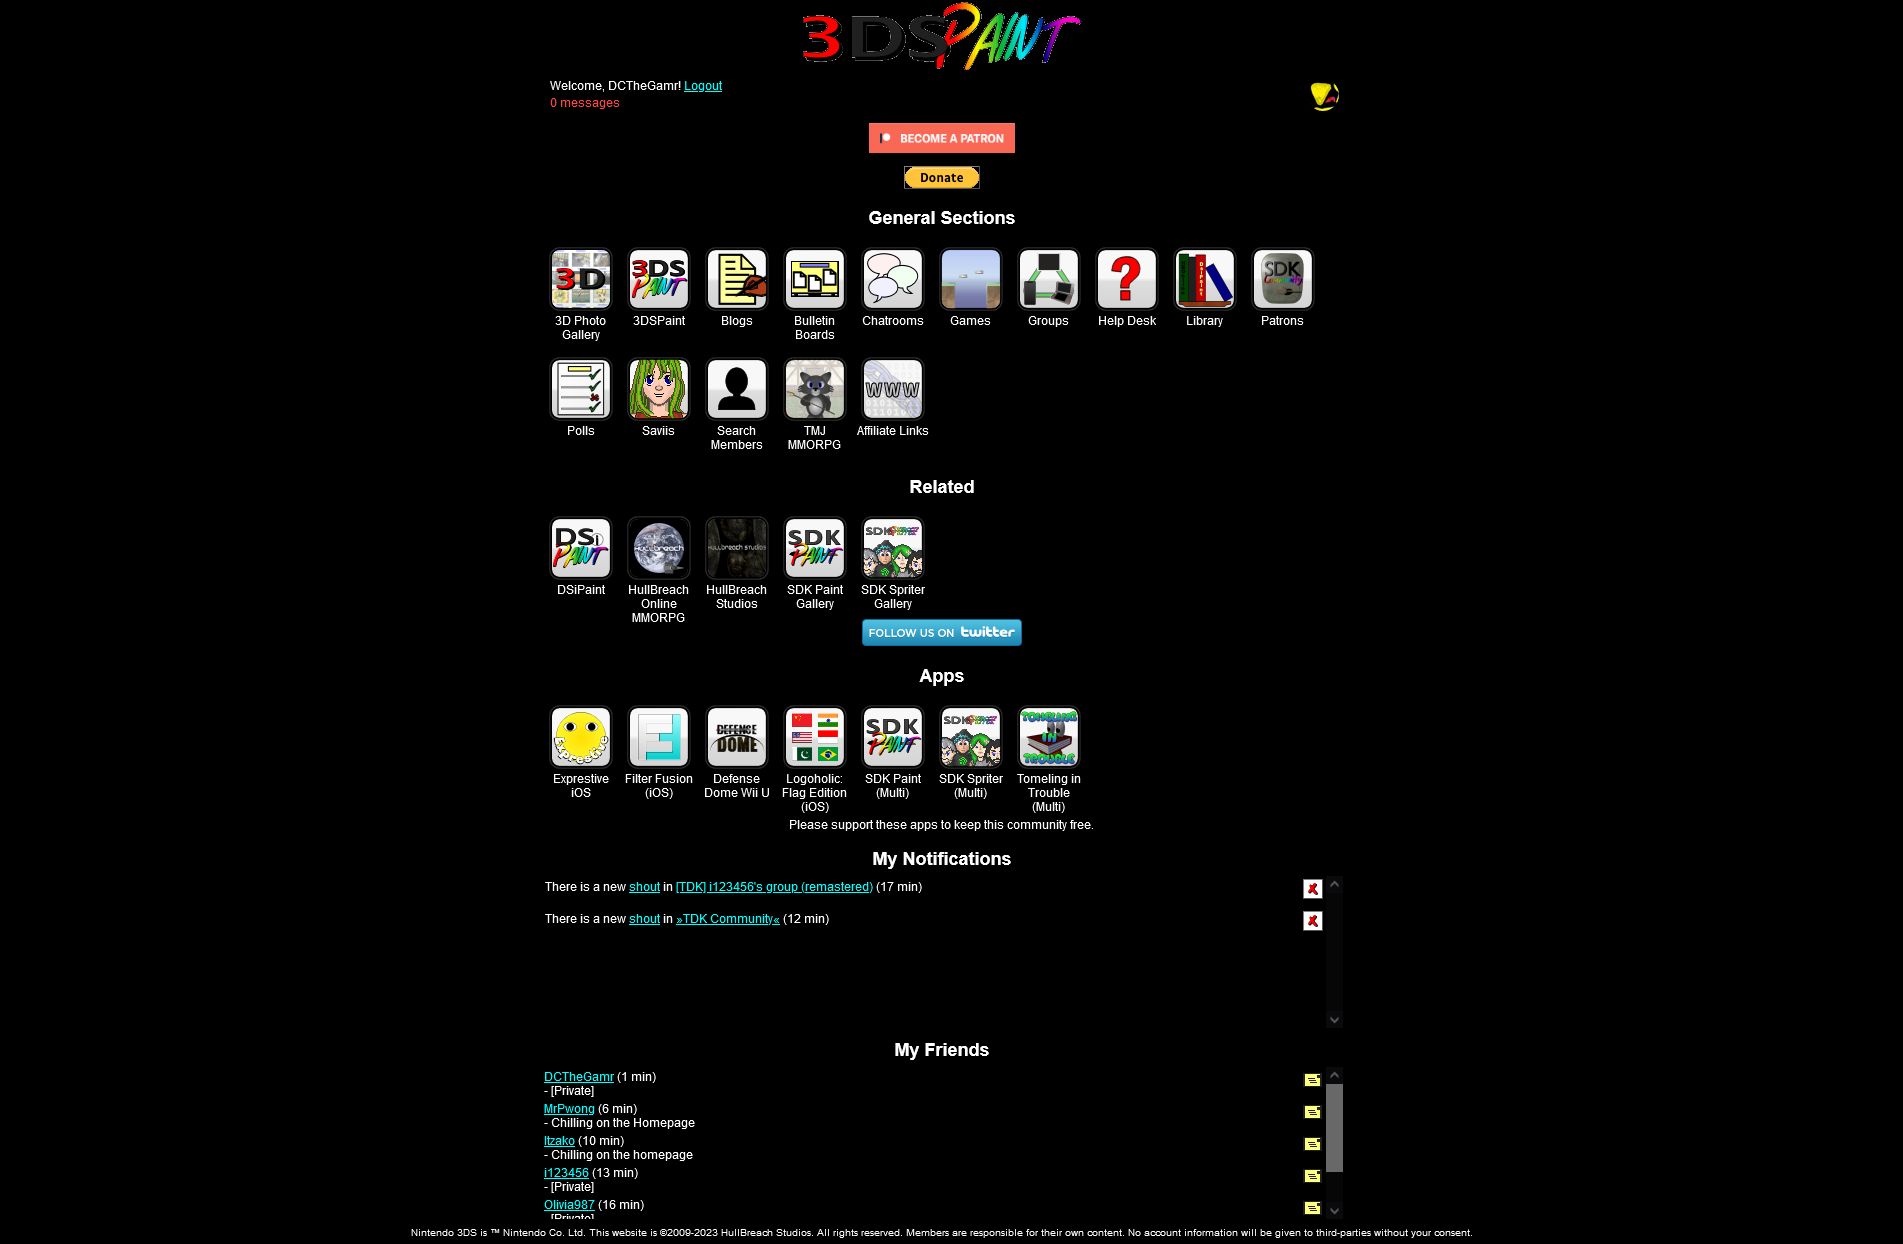 Screenshot of AMOLED 3DSPaint/DSiPaint